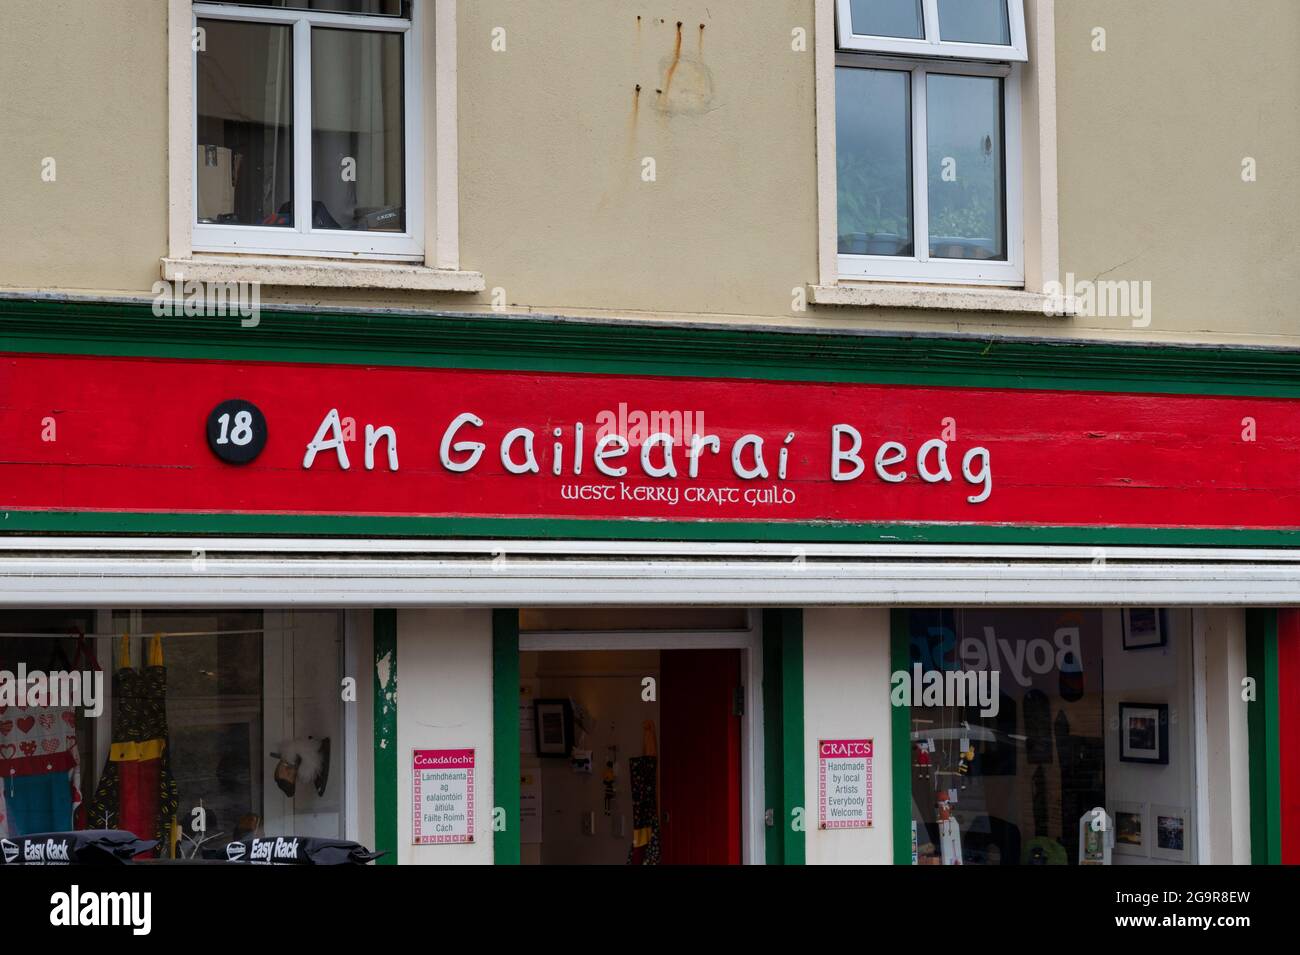 Dingle, Irlande - 8 juillet 2021 : le panneau pour une boutique Gailearai Beag à Dingle Irlande Banque D'Images